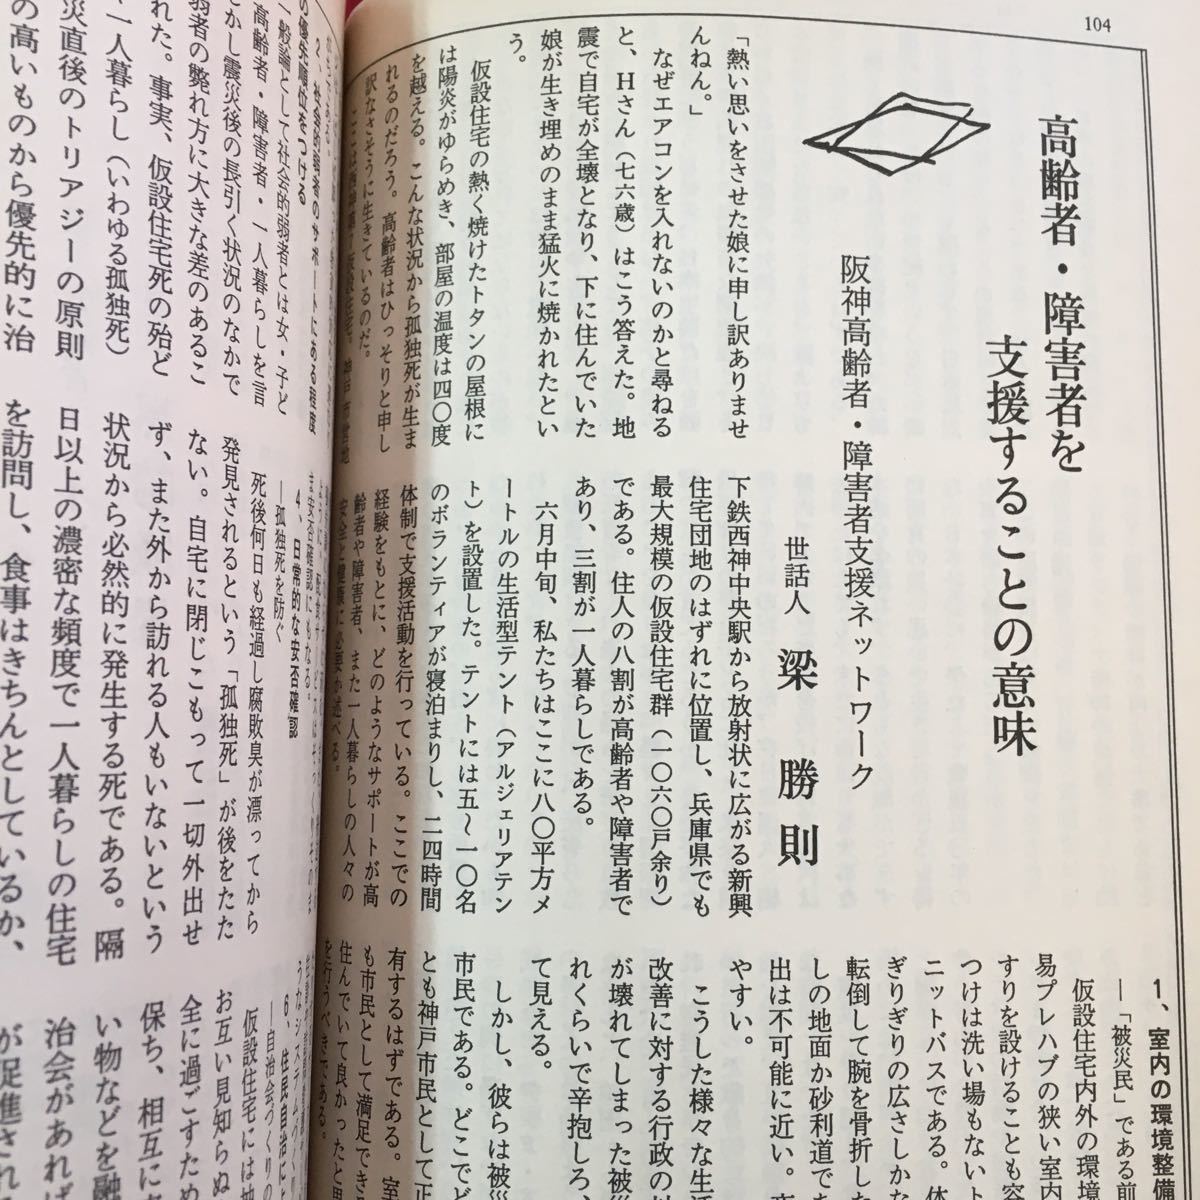 S7g-405 世界 緊急宣言 阪神復興と人権 核廃絶への二つの道 アジアの自画像をいかに描くか 都市東京をどうするか 1995年10月1日発行_画像6